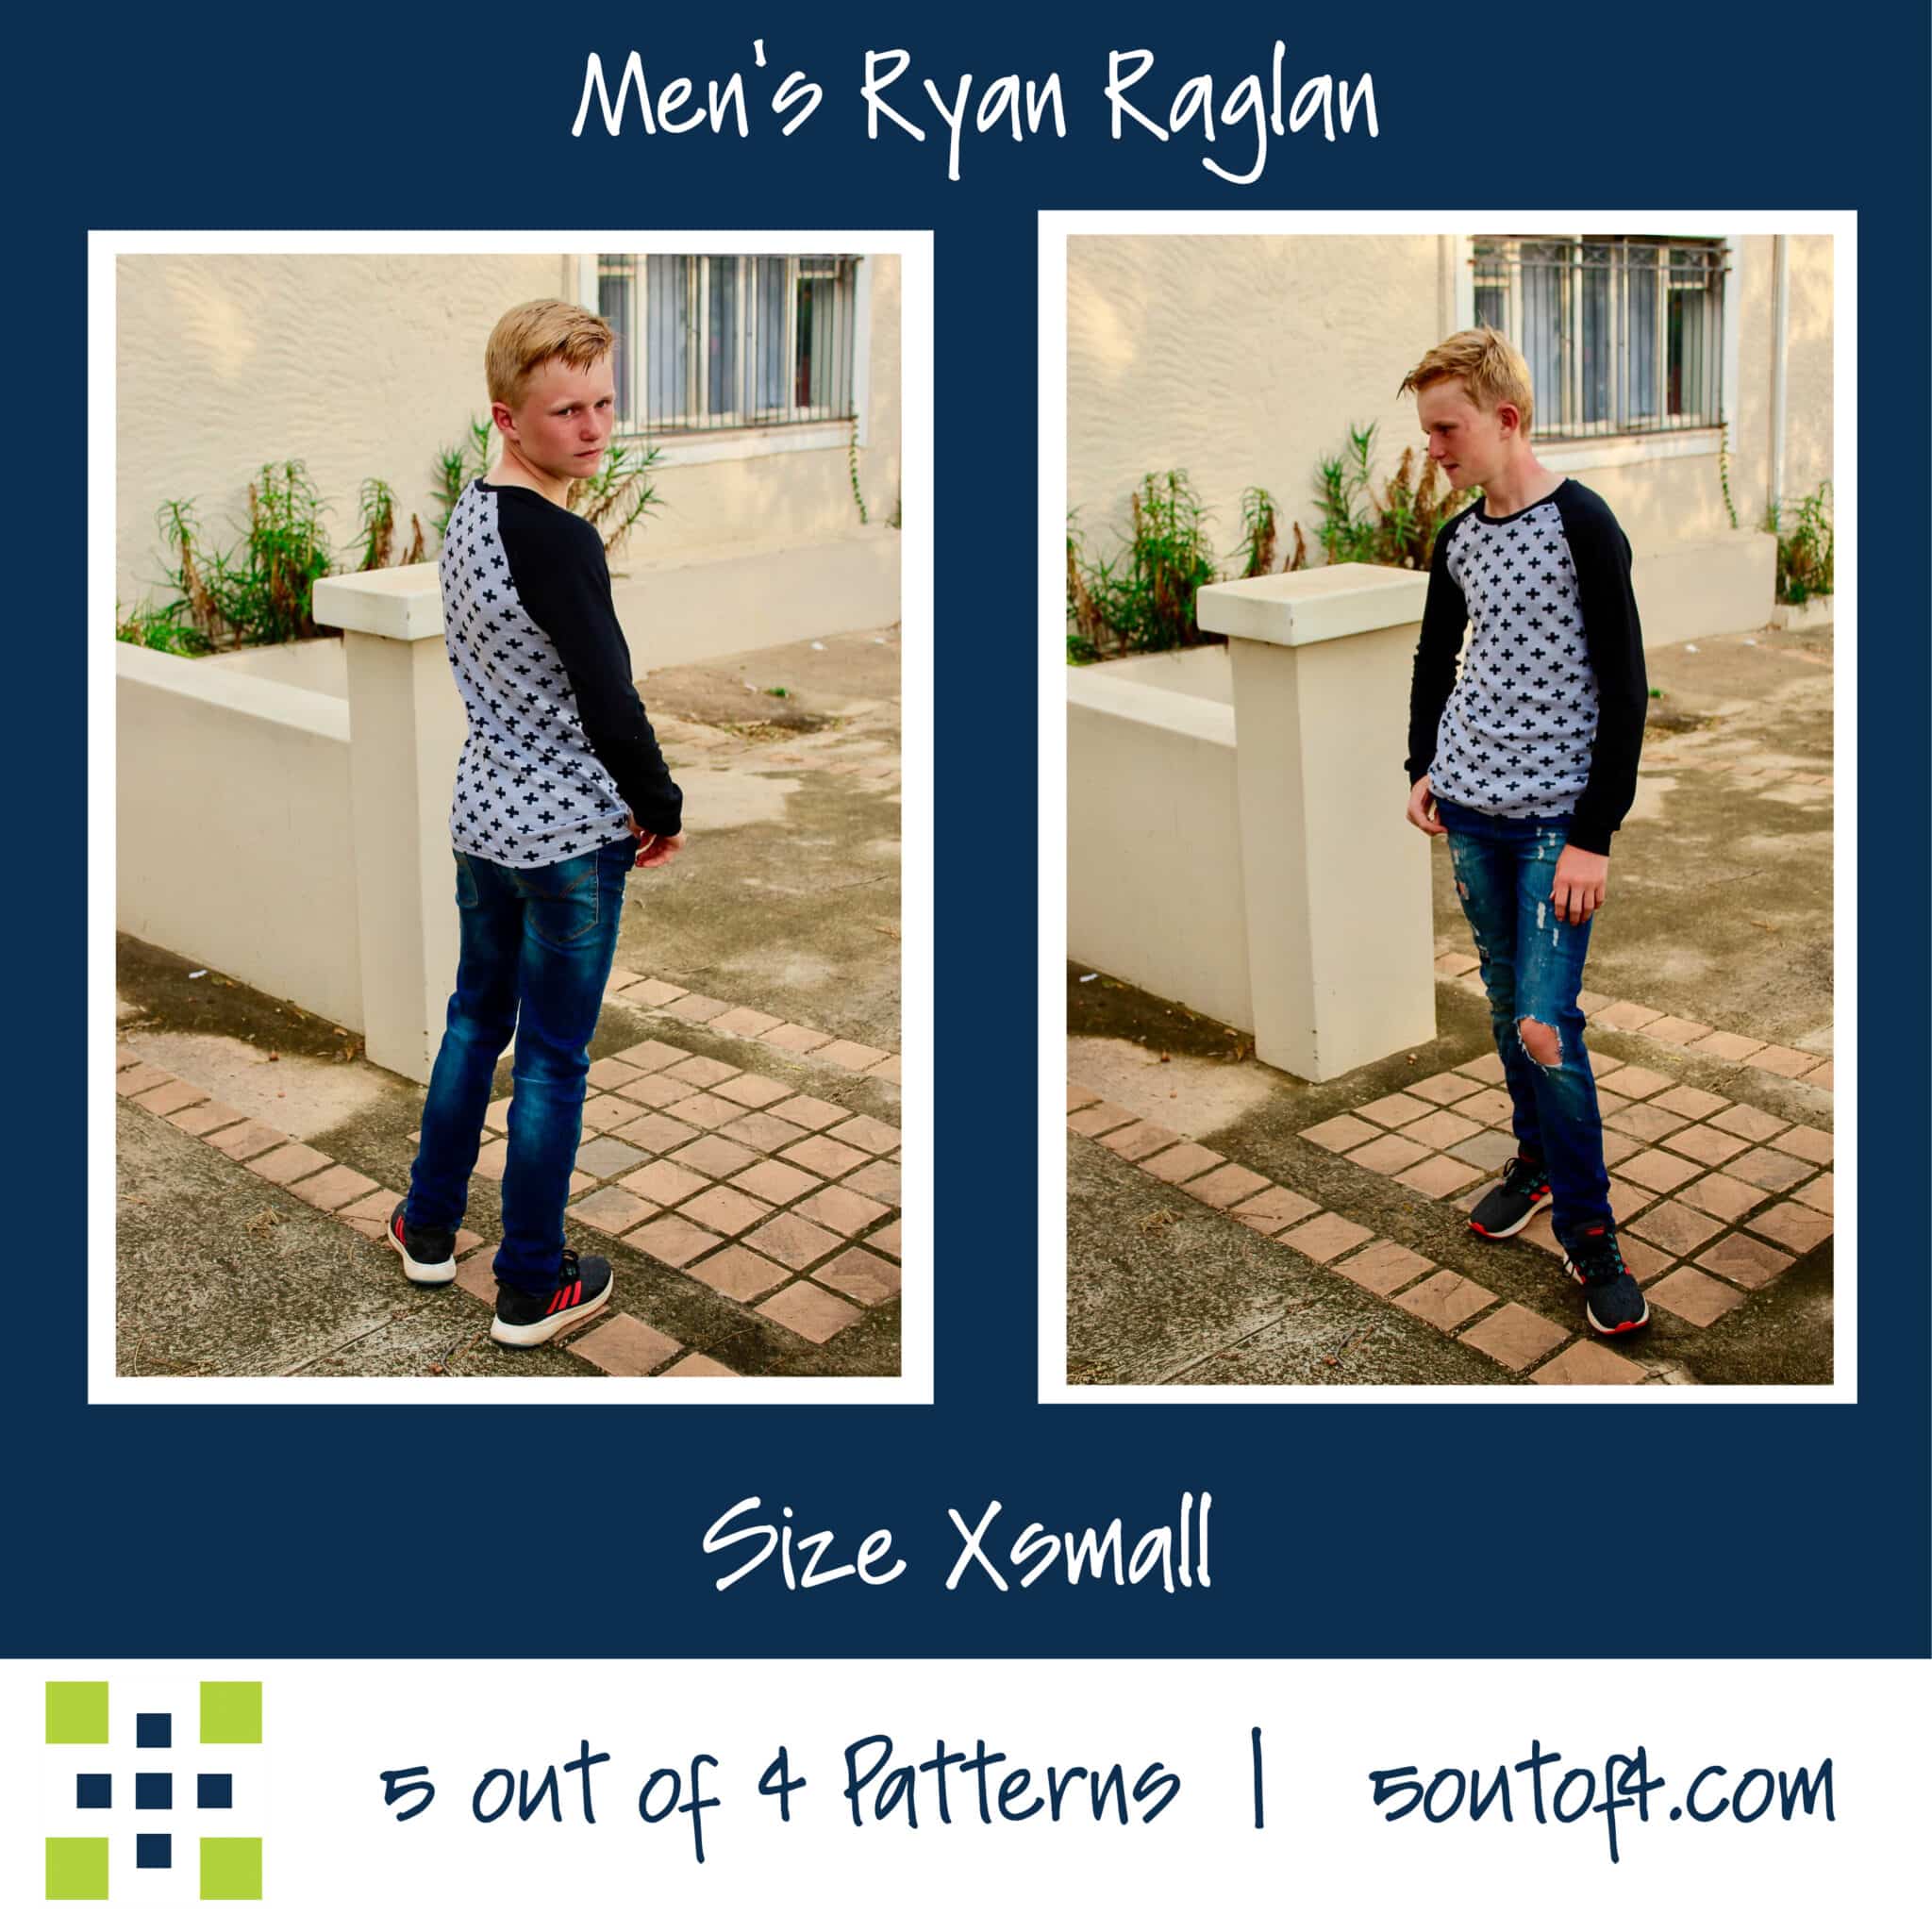 Ryan Raglan - 5 out of 4 Patterns